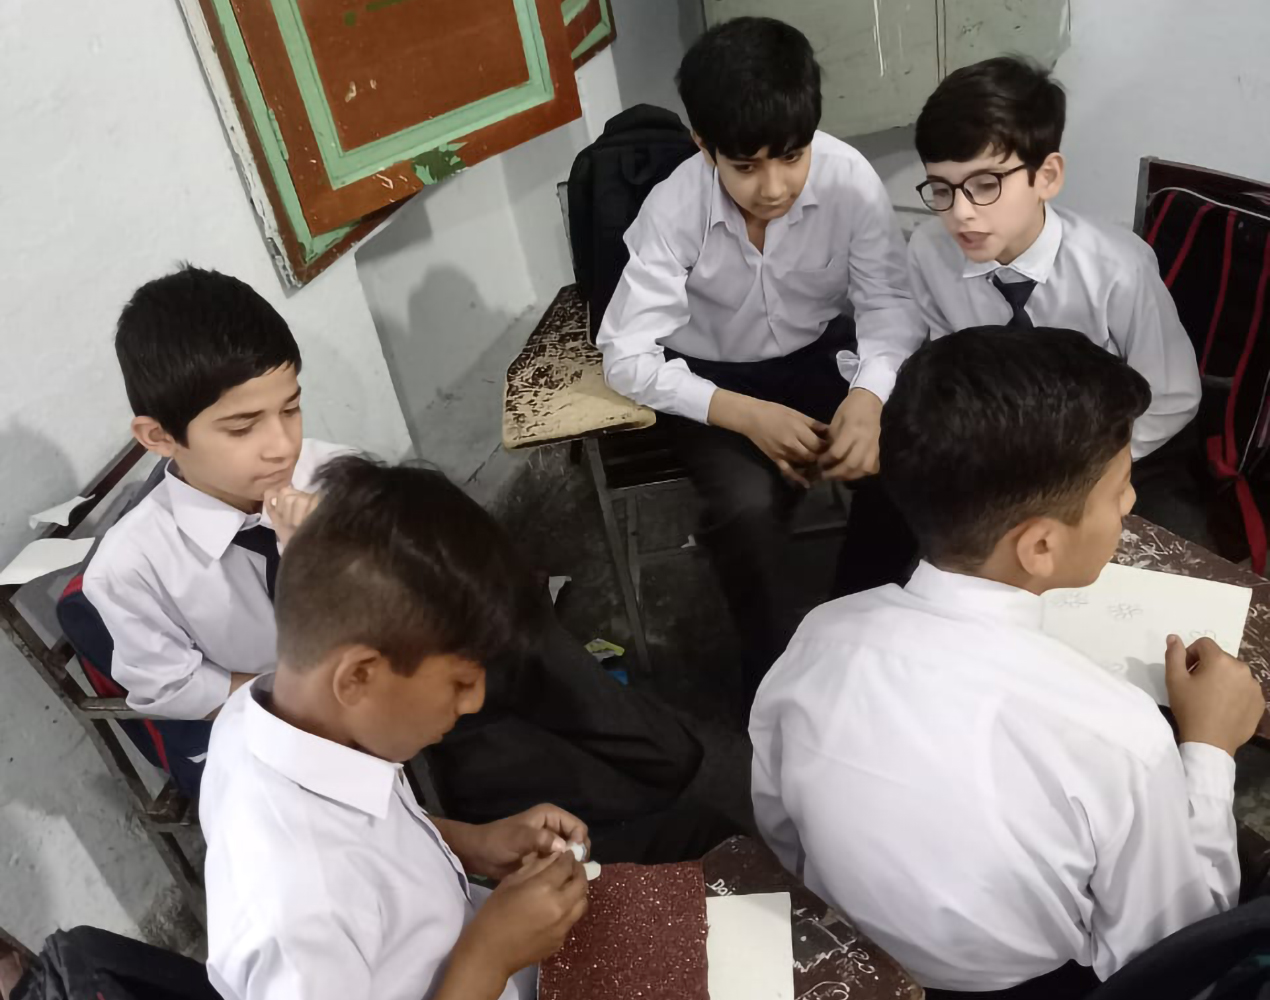 Viisi poikaa valkoisissa kauluspaidoissa. Pojat istuvat koulupöytiensä ääressä.